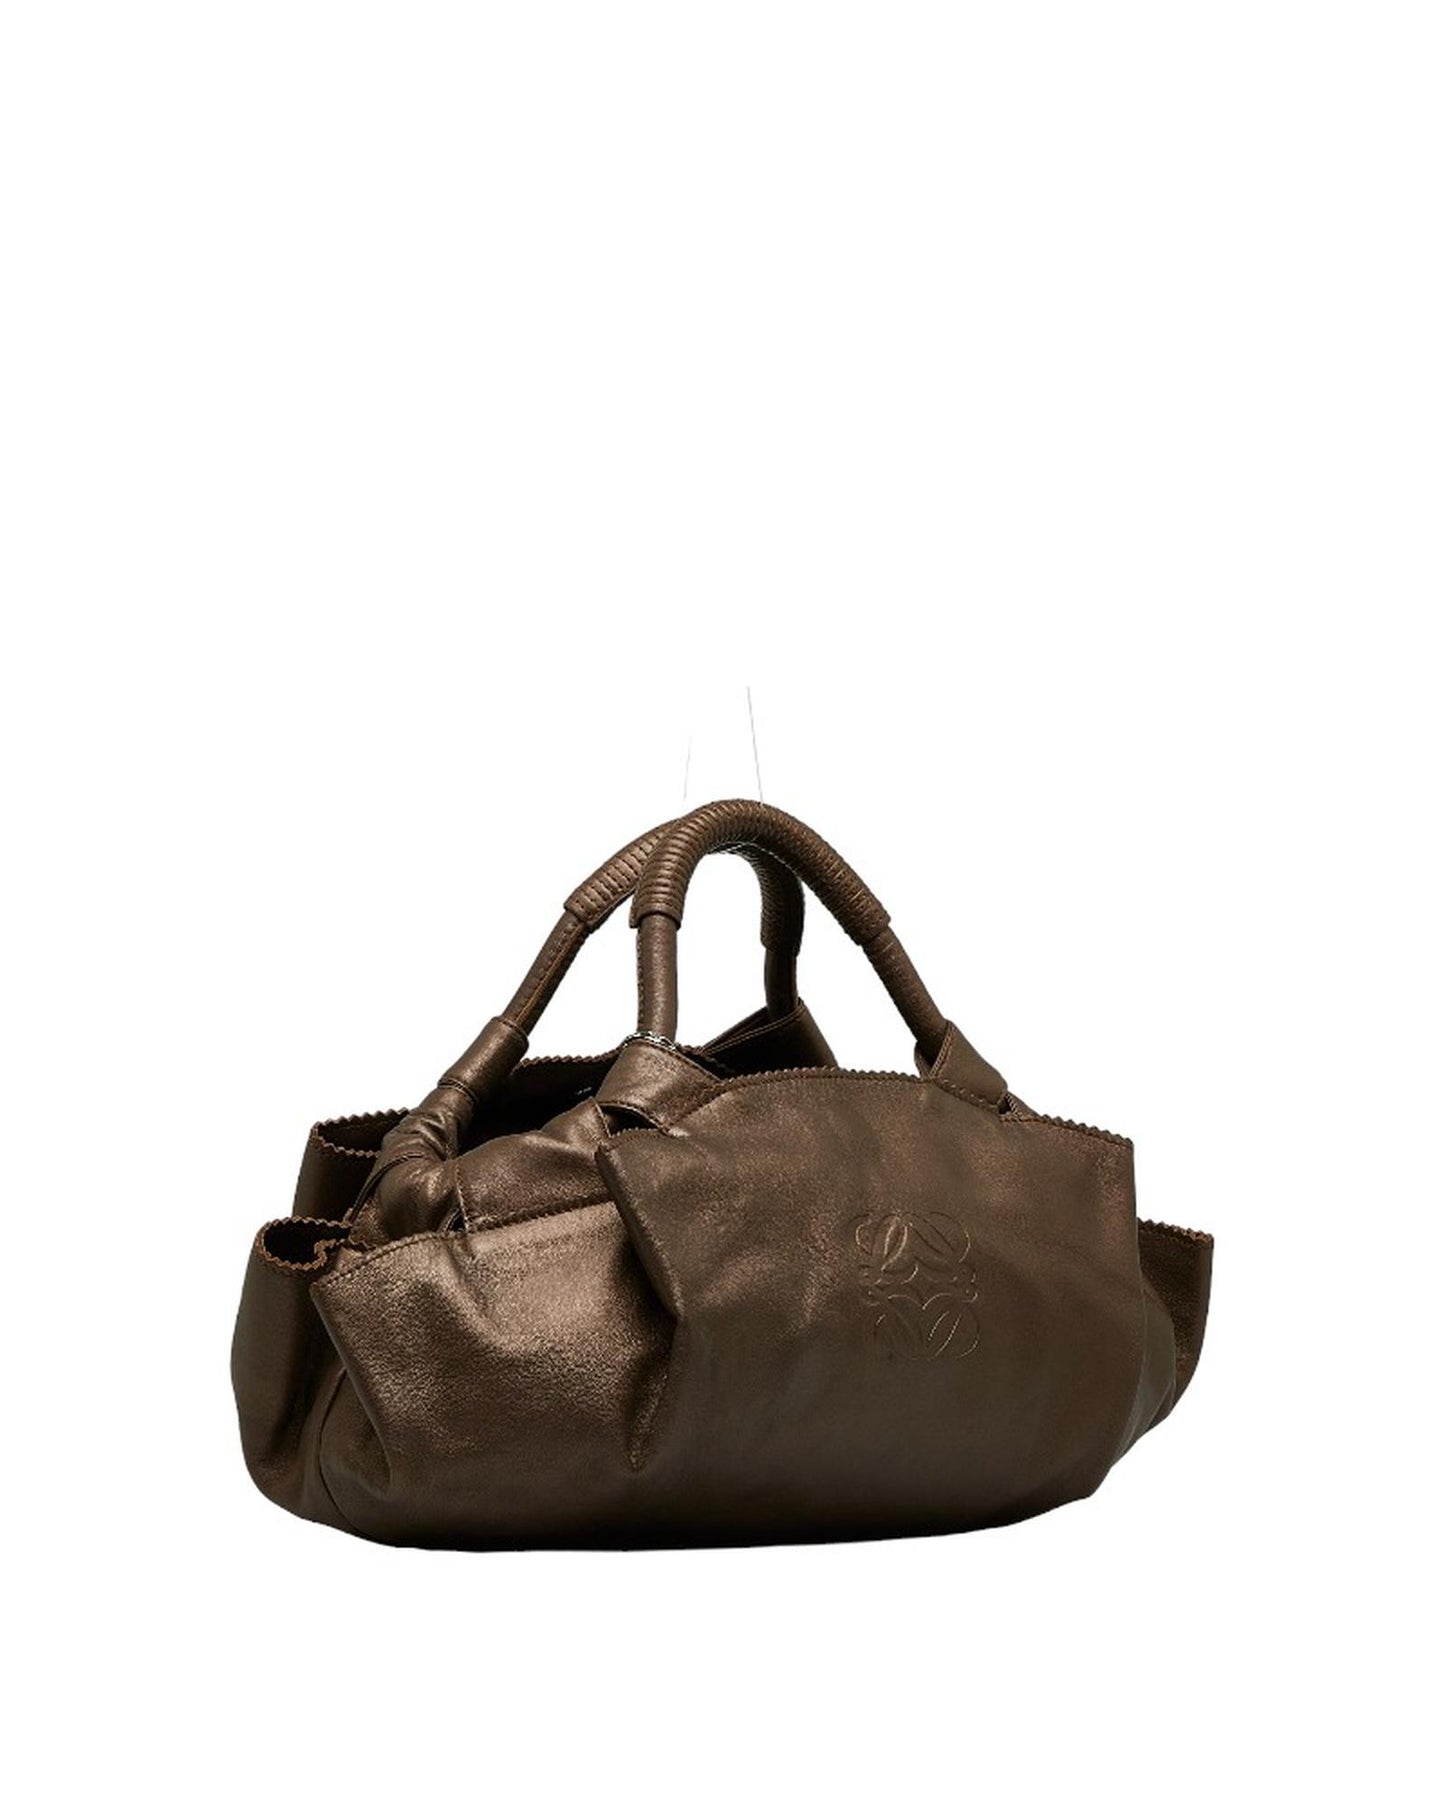 Loewe Women's Bronze Nappa Aire Handbag in A Condition in Bronze